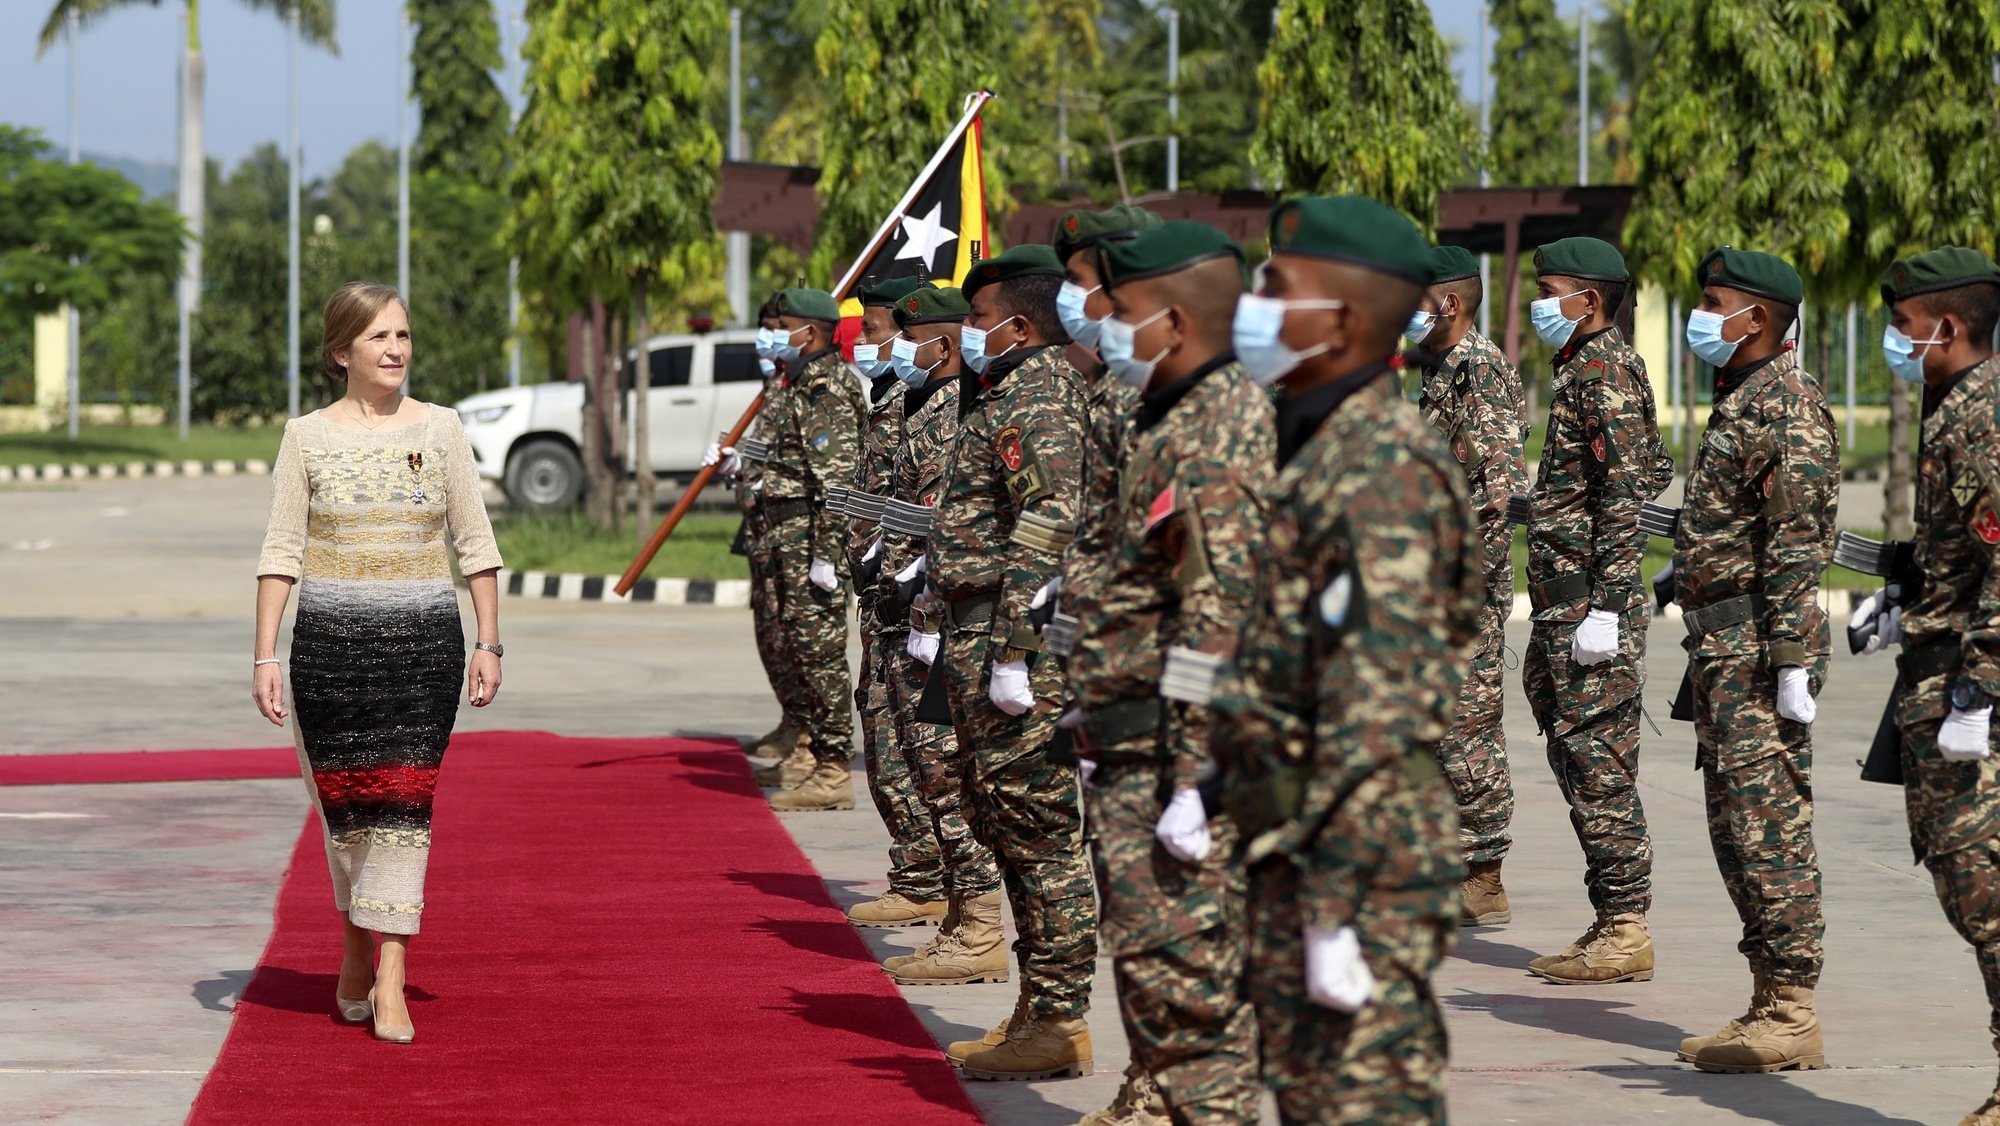 A nova embaixadora de Portugal em Díli, Manuela Bairos (E), passa revista às tropas em parada à chegada para apresentar as cartas credenciais ao Presidente de Timor-Leste, Francisco Guterres Lú-Olo (ausente da fotografia), no Palácio Presidencial, em Díli, Timor-Leste, 25 de março de 2022. ANTÓNIO SAMPAIO/LUSA